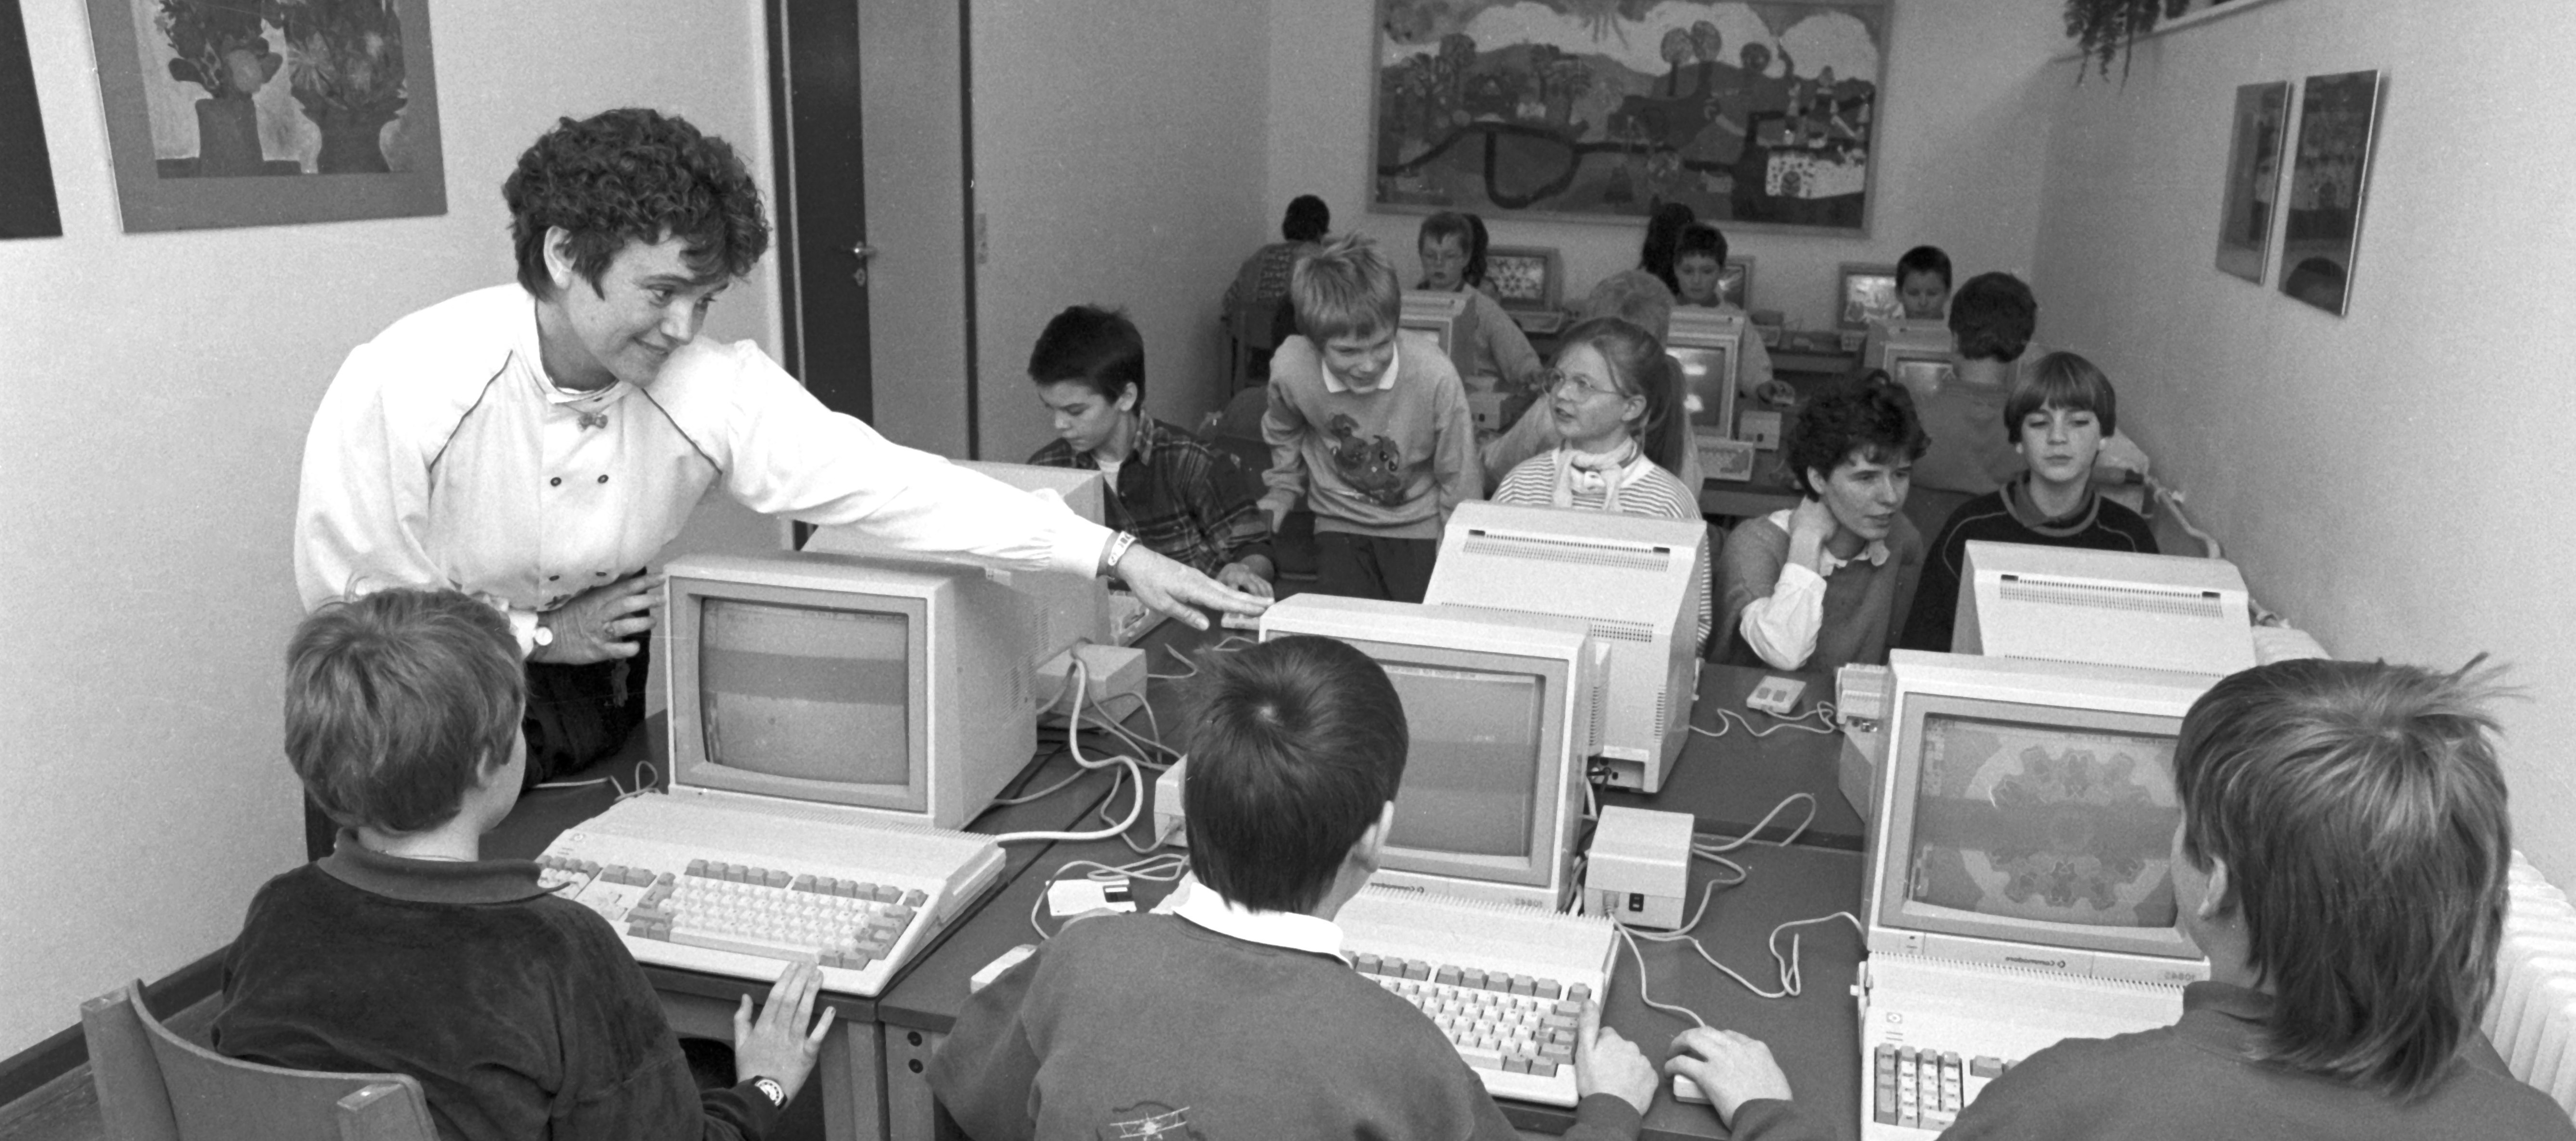 Klassenzimmer mit Computern aus den frühen 2000ern